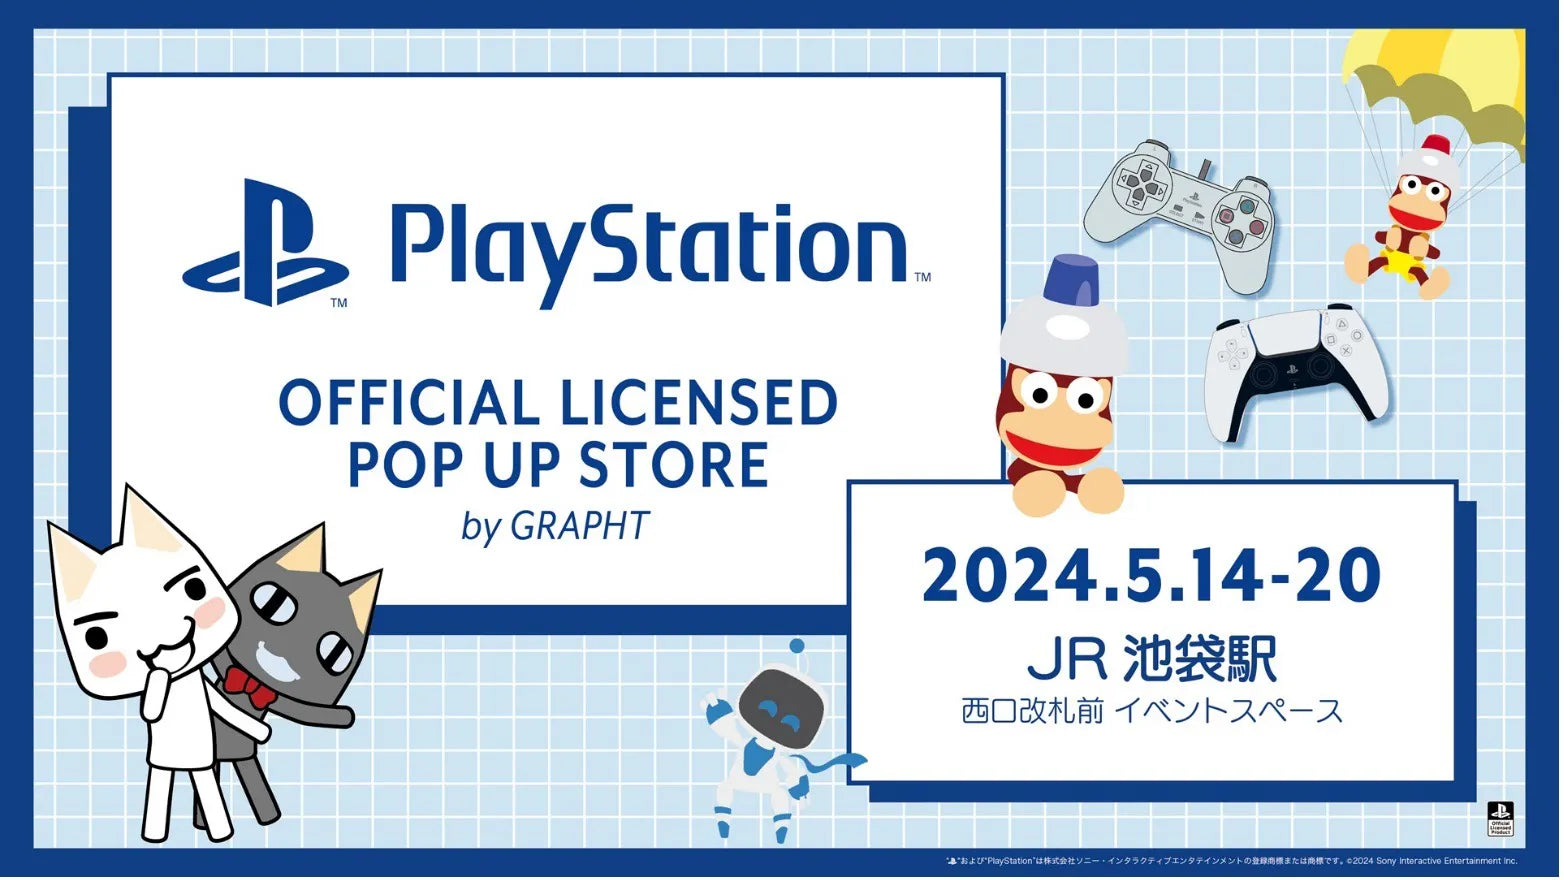 『どこでもいっしょ』、『サルゲッチュ』、『PlayStation ™』の 新作オフィシャルライセンスコレクションをリリース　PlayStation™ POP UP STOREなどにて5月14日(火)発売